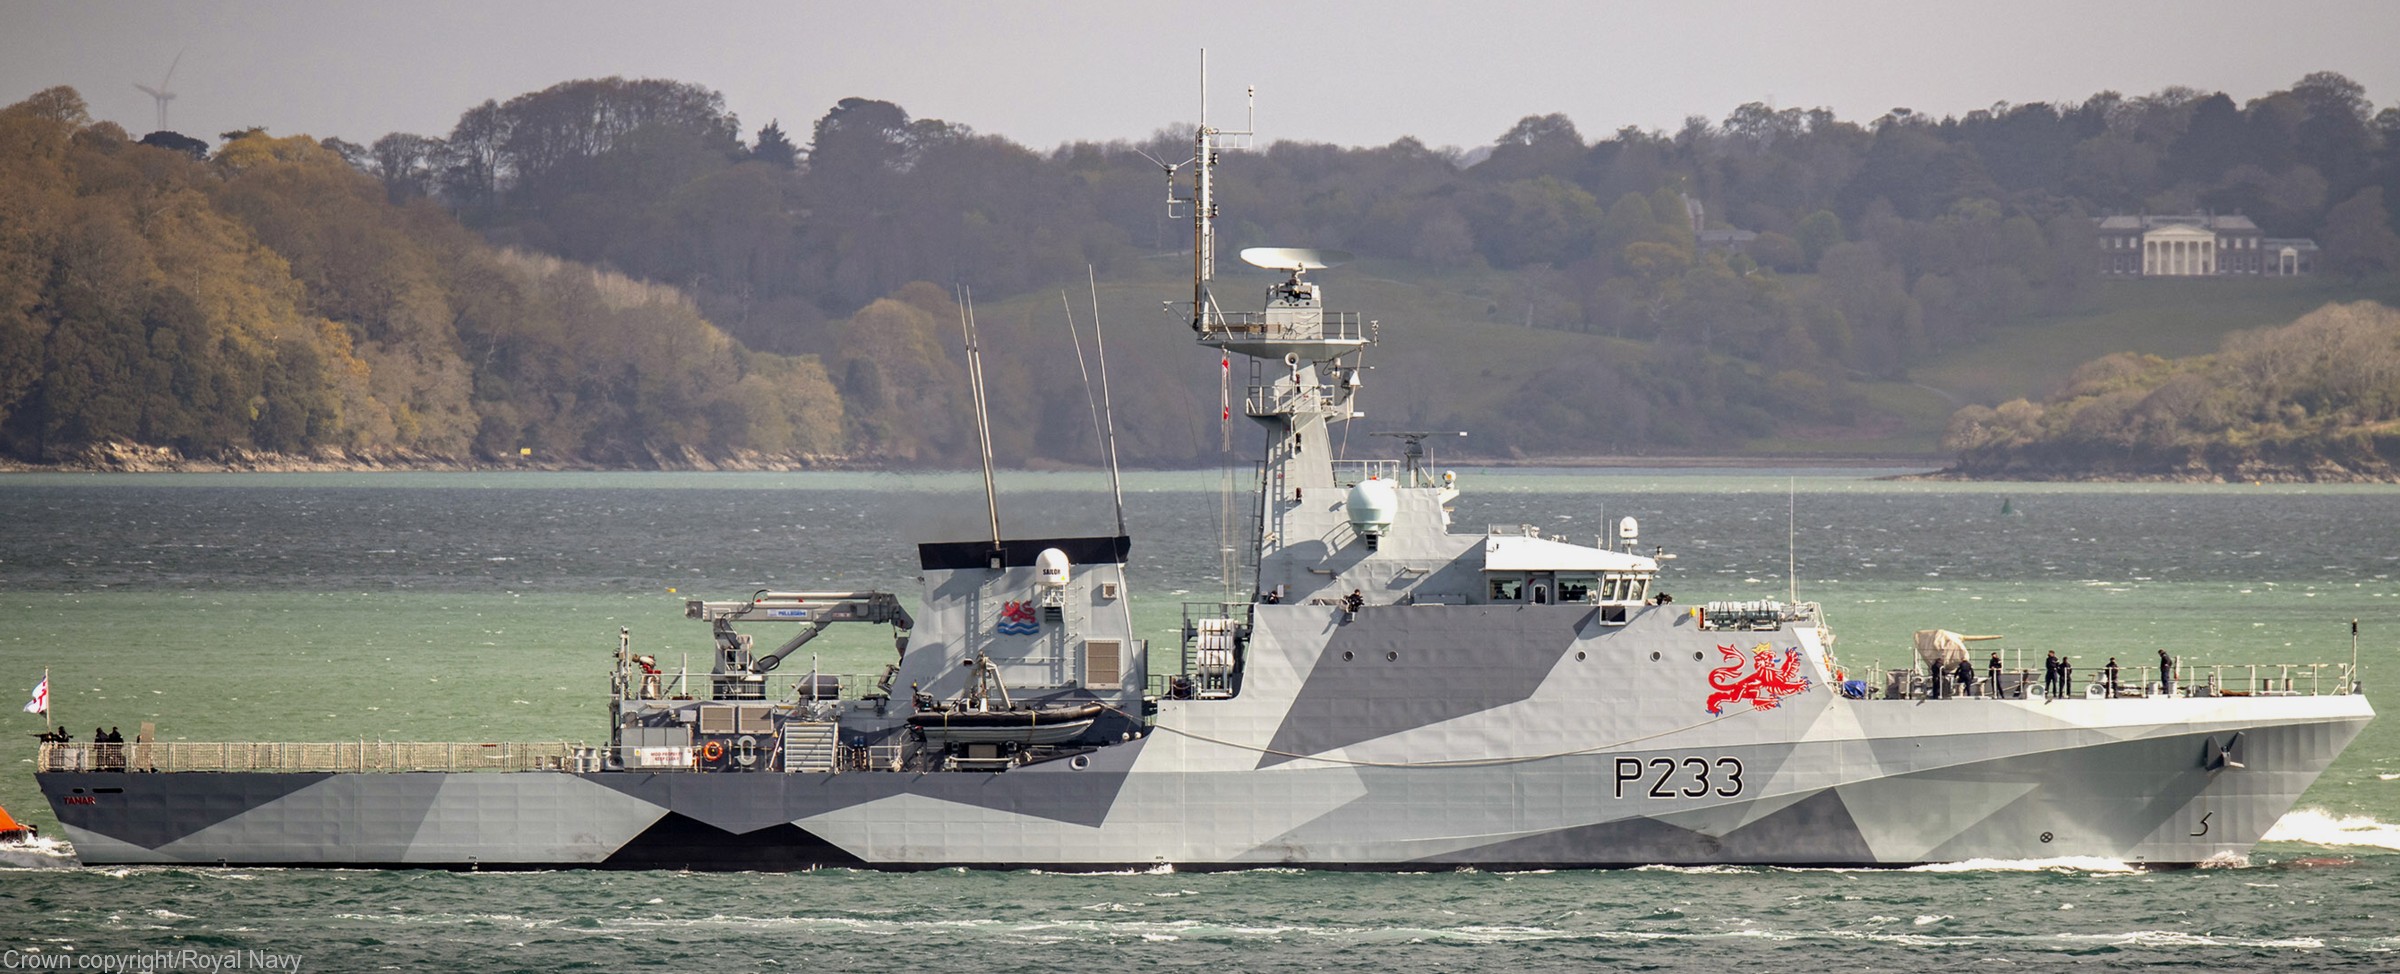 p233 hms tamar river class offshore patrol vessel opv royal navy 18 dazzle camouflage paint scheme